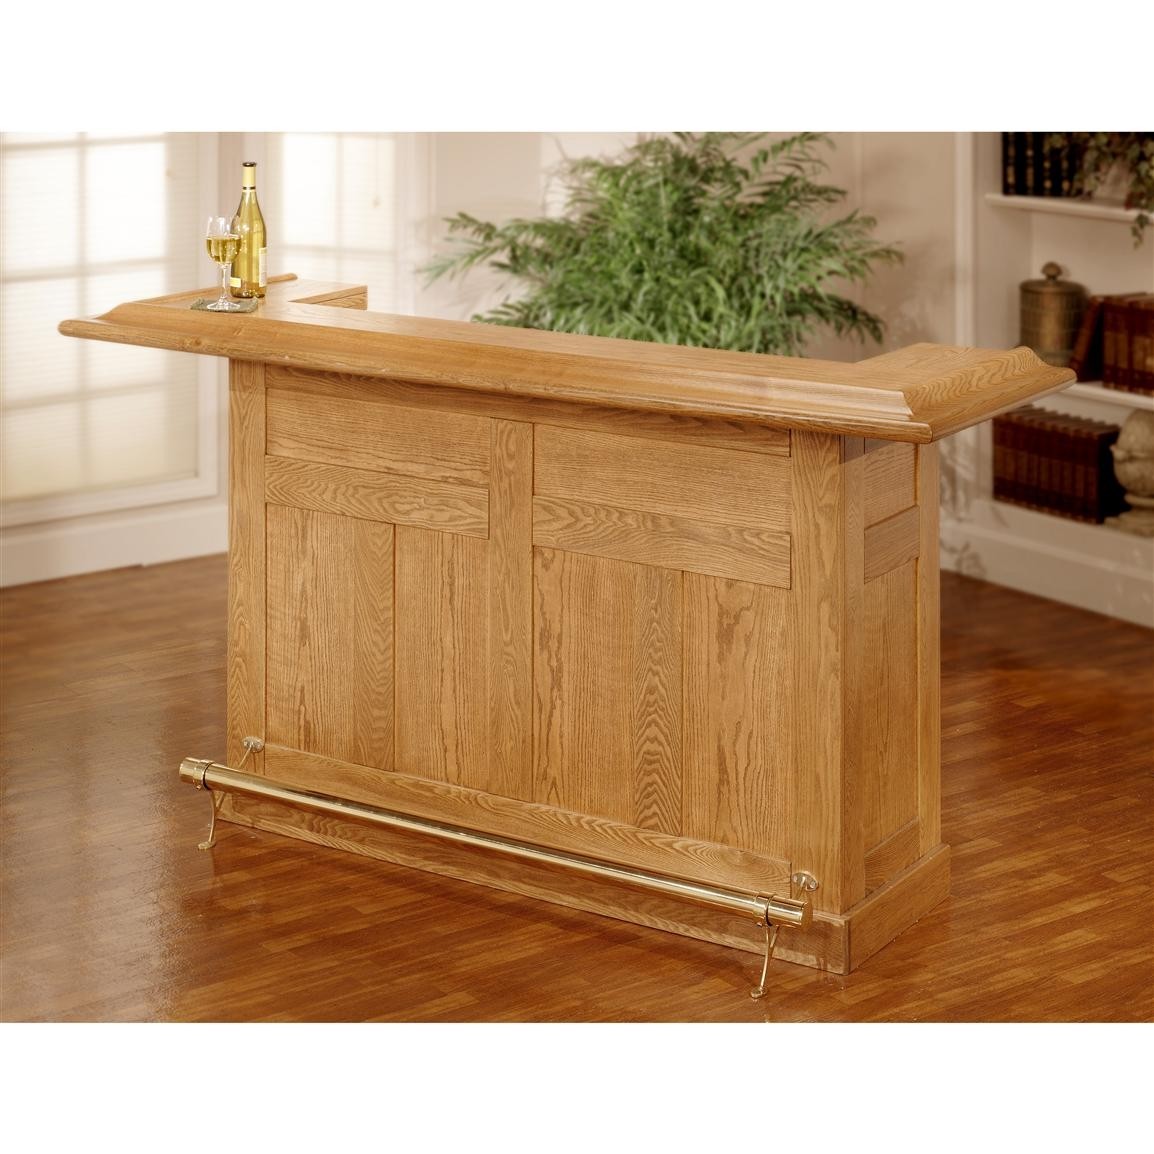 Hillsdale furniture classic oak bar 128660 kitchen